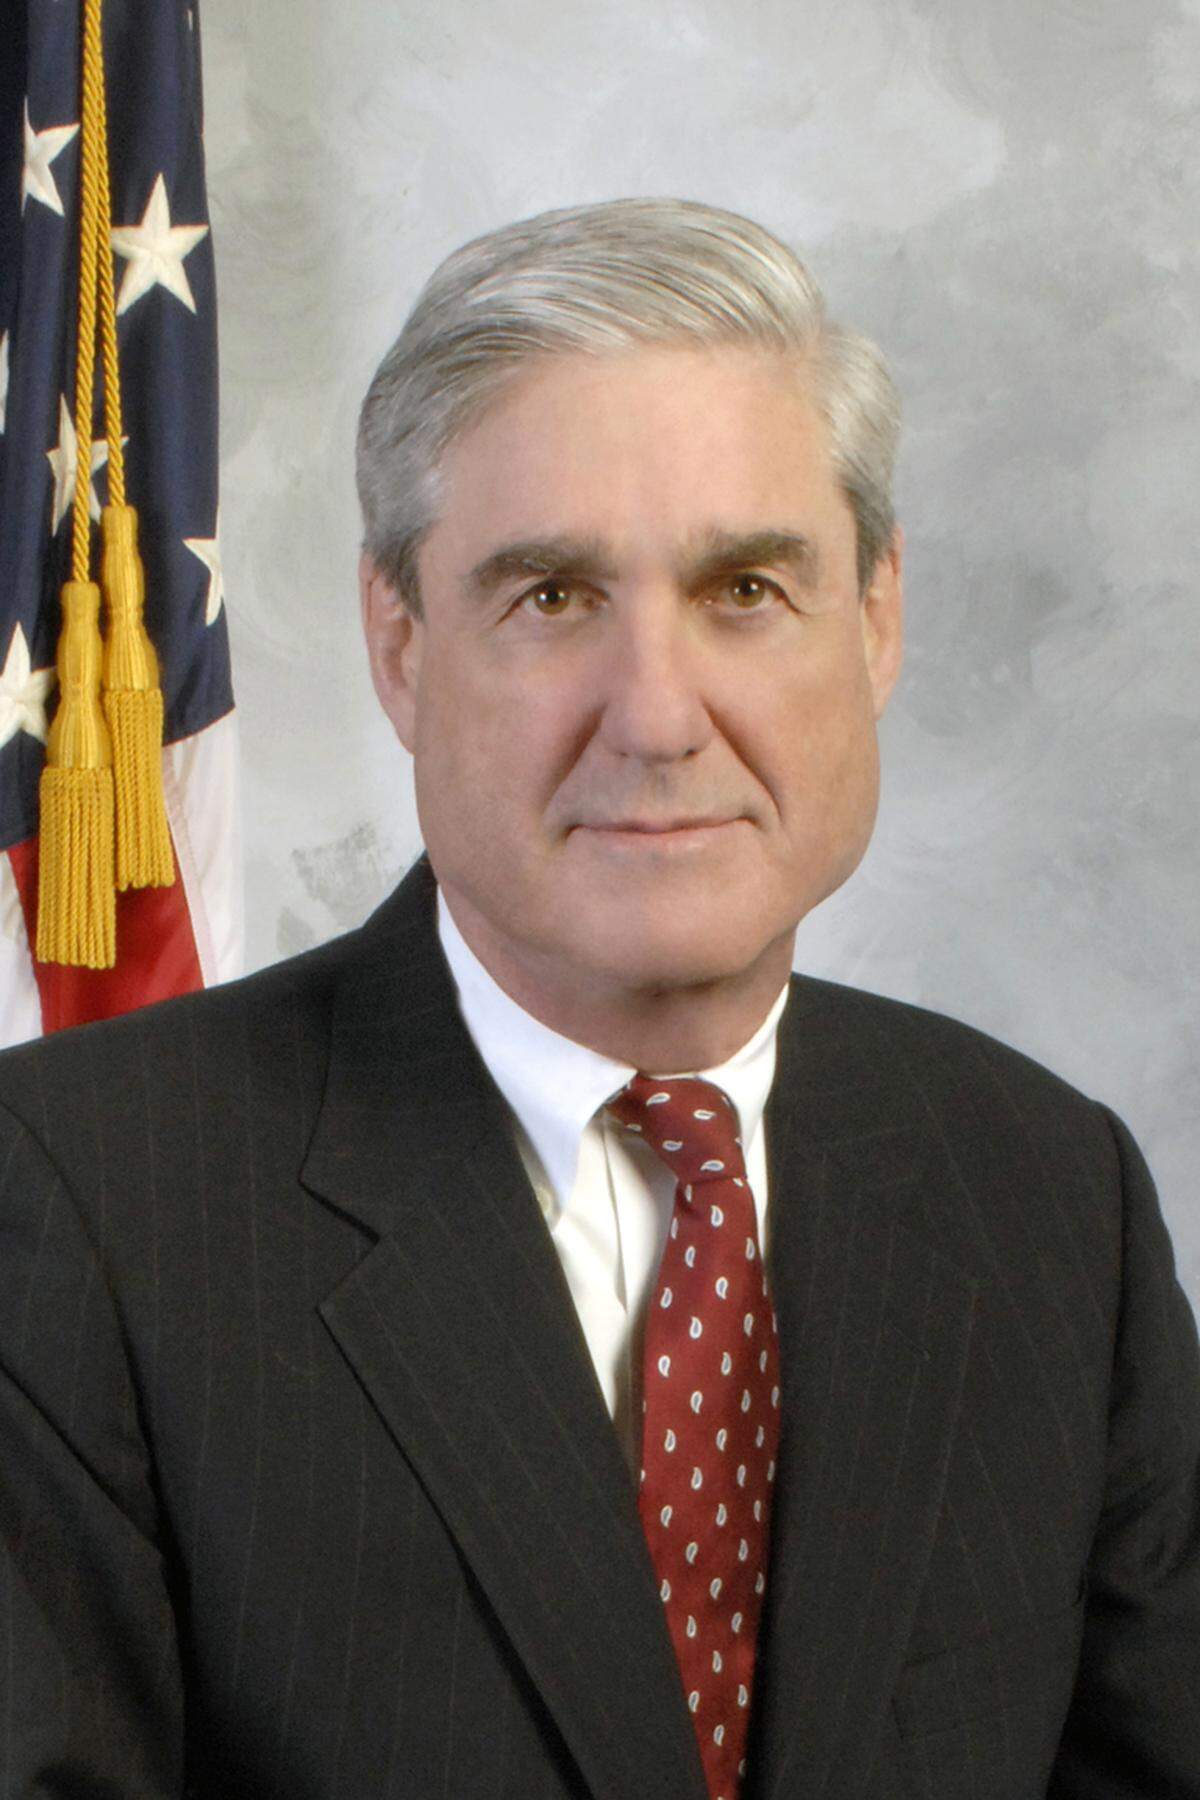 Robert Mueller (Bild) war seit 2001 FBI-Direktor. Der FBI-Chef ist direkt dem Justizminister unterstellt. Das FBI beschäftigt rund 35.000 Mitarbeiter, davon rund 13.000 Agenten, der Rest sind Analytiker, Wissenschaftler und andere unterstützende Mitarbeiter. Das Jahresbudget betrug zuletzt 8,1 Milliarden US-Dollar.